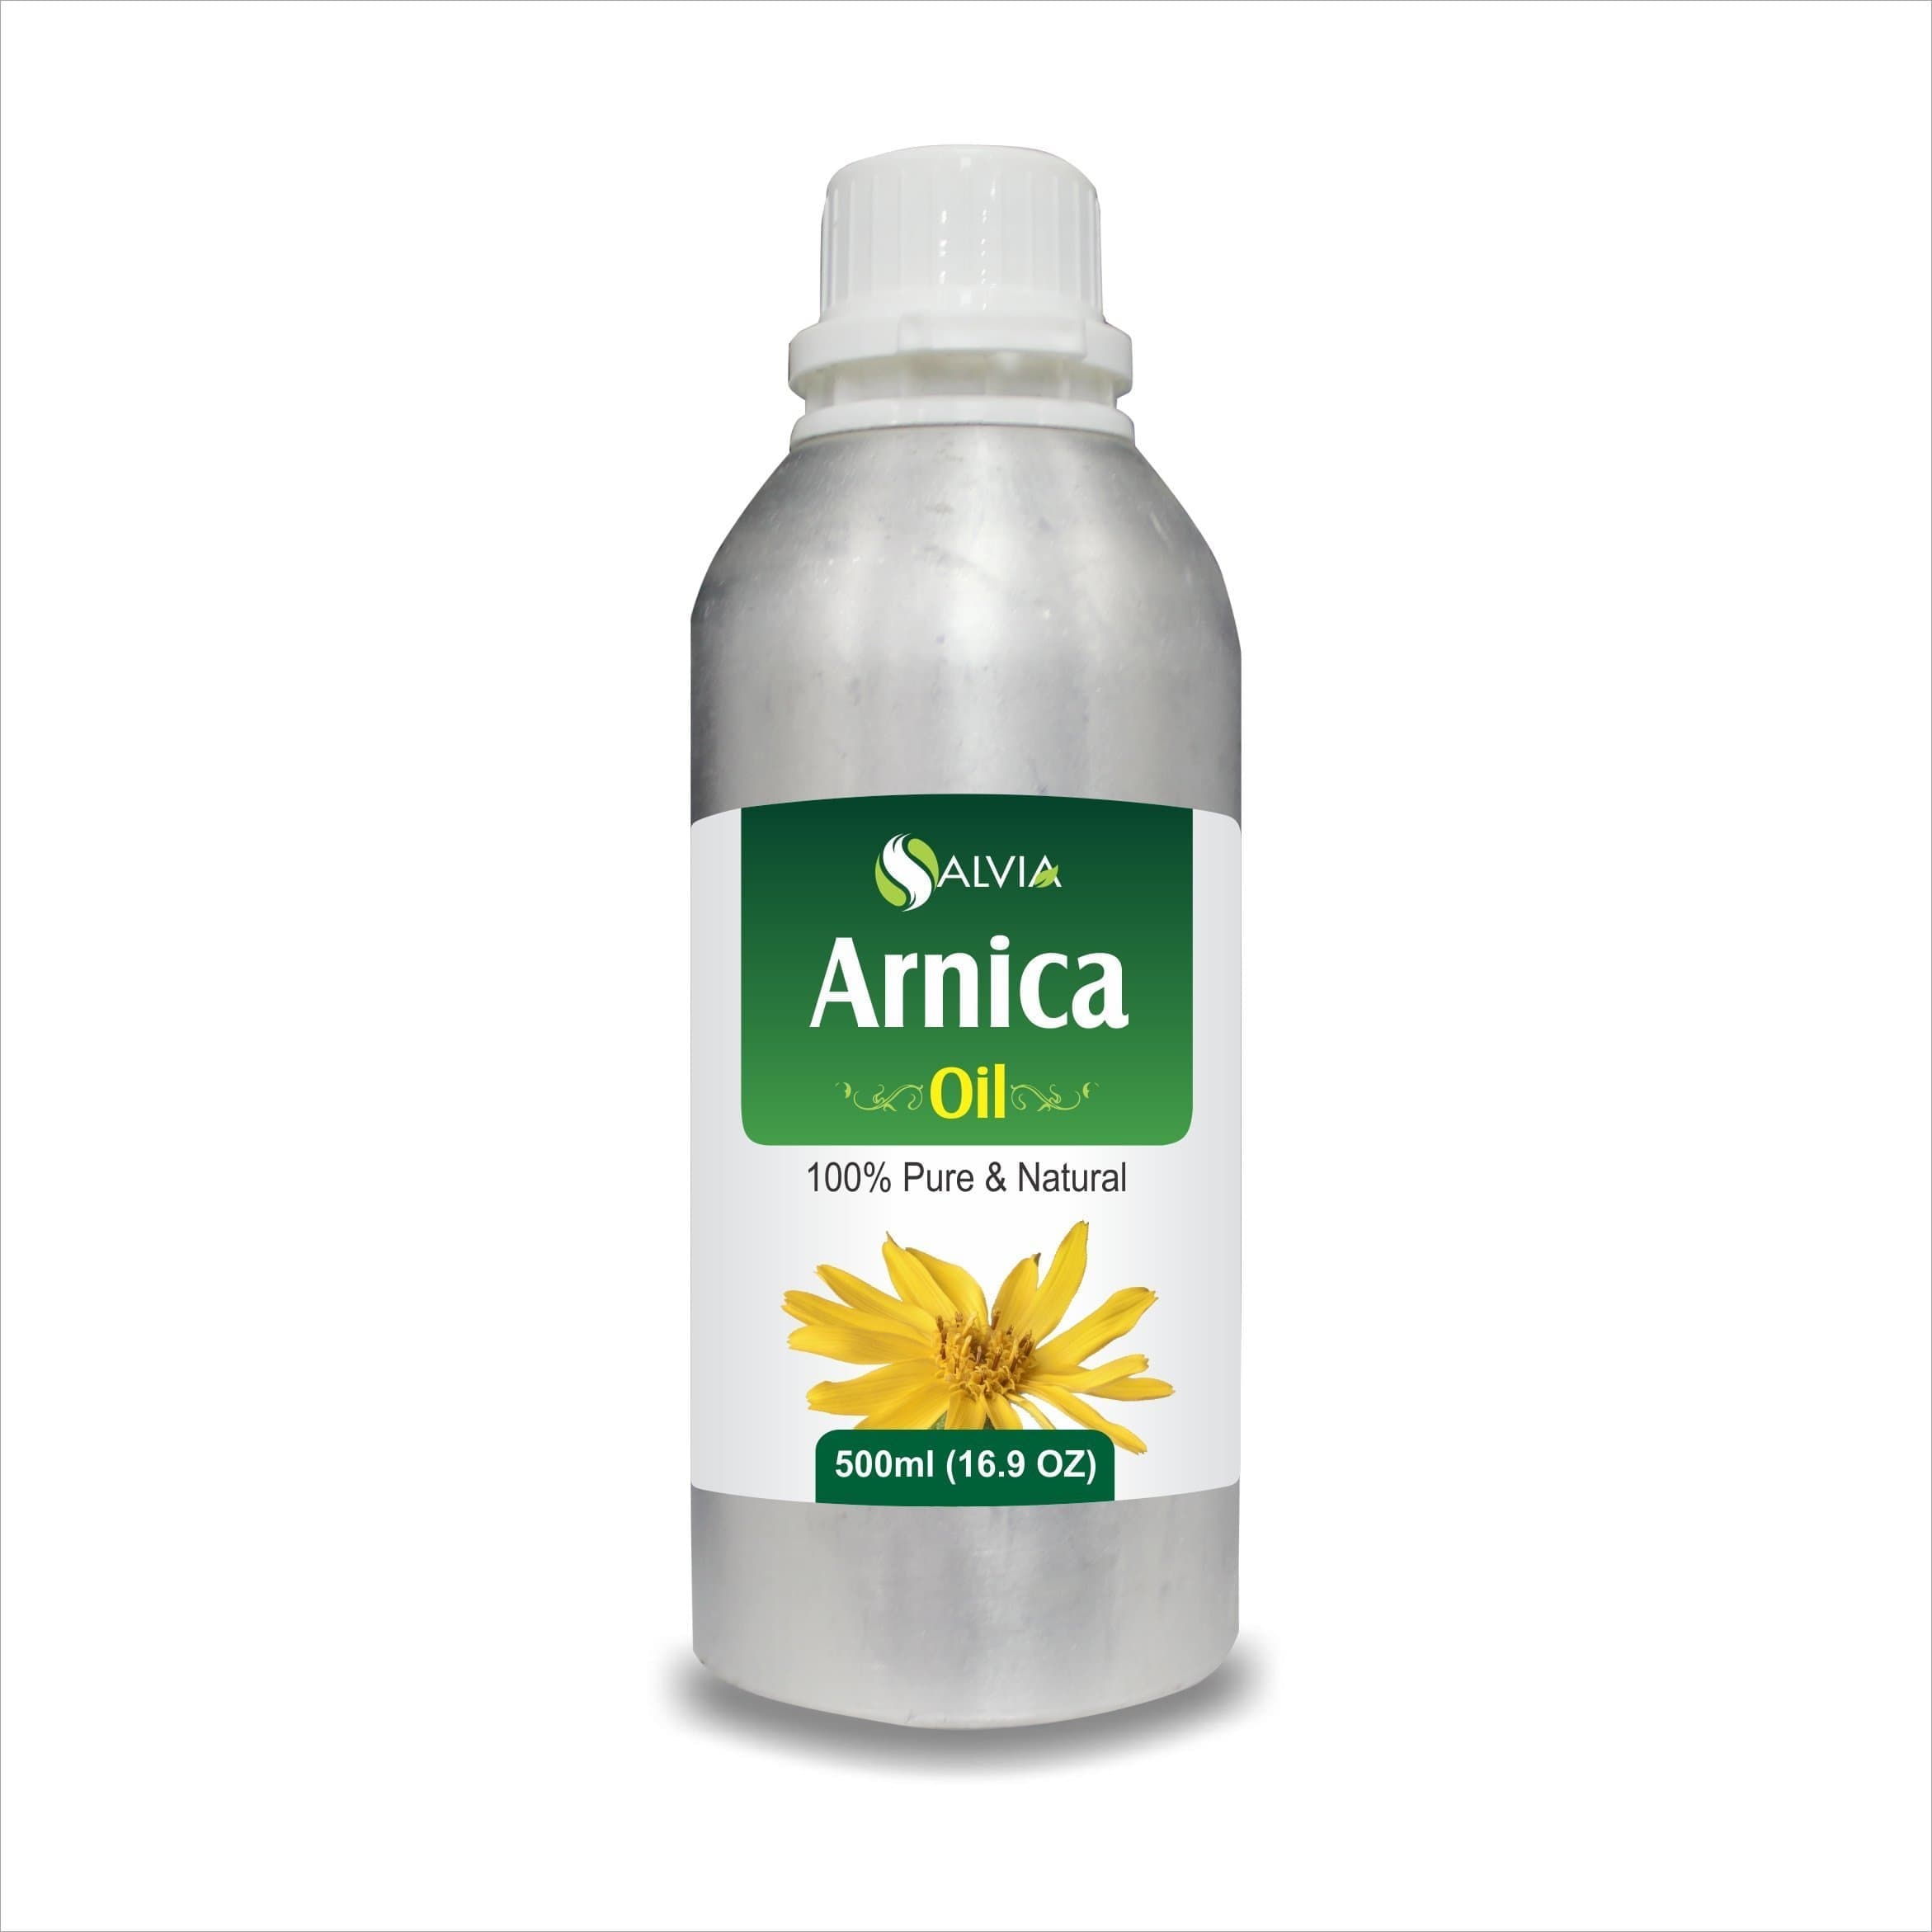 arnica oil side effects